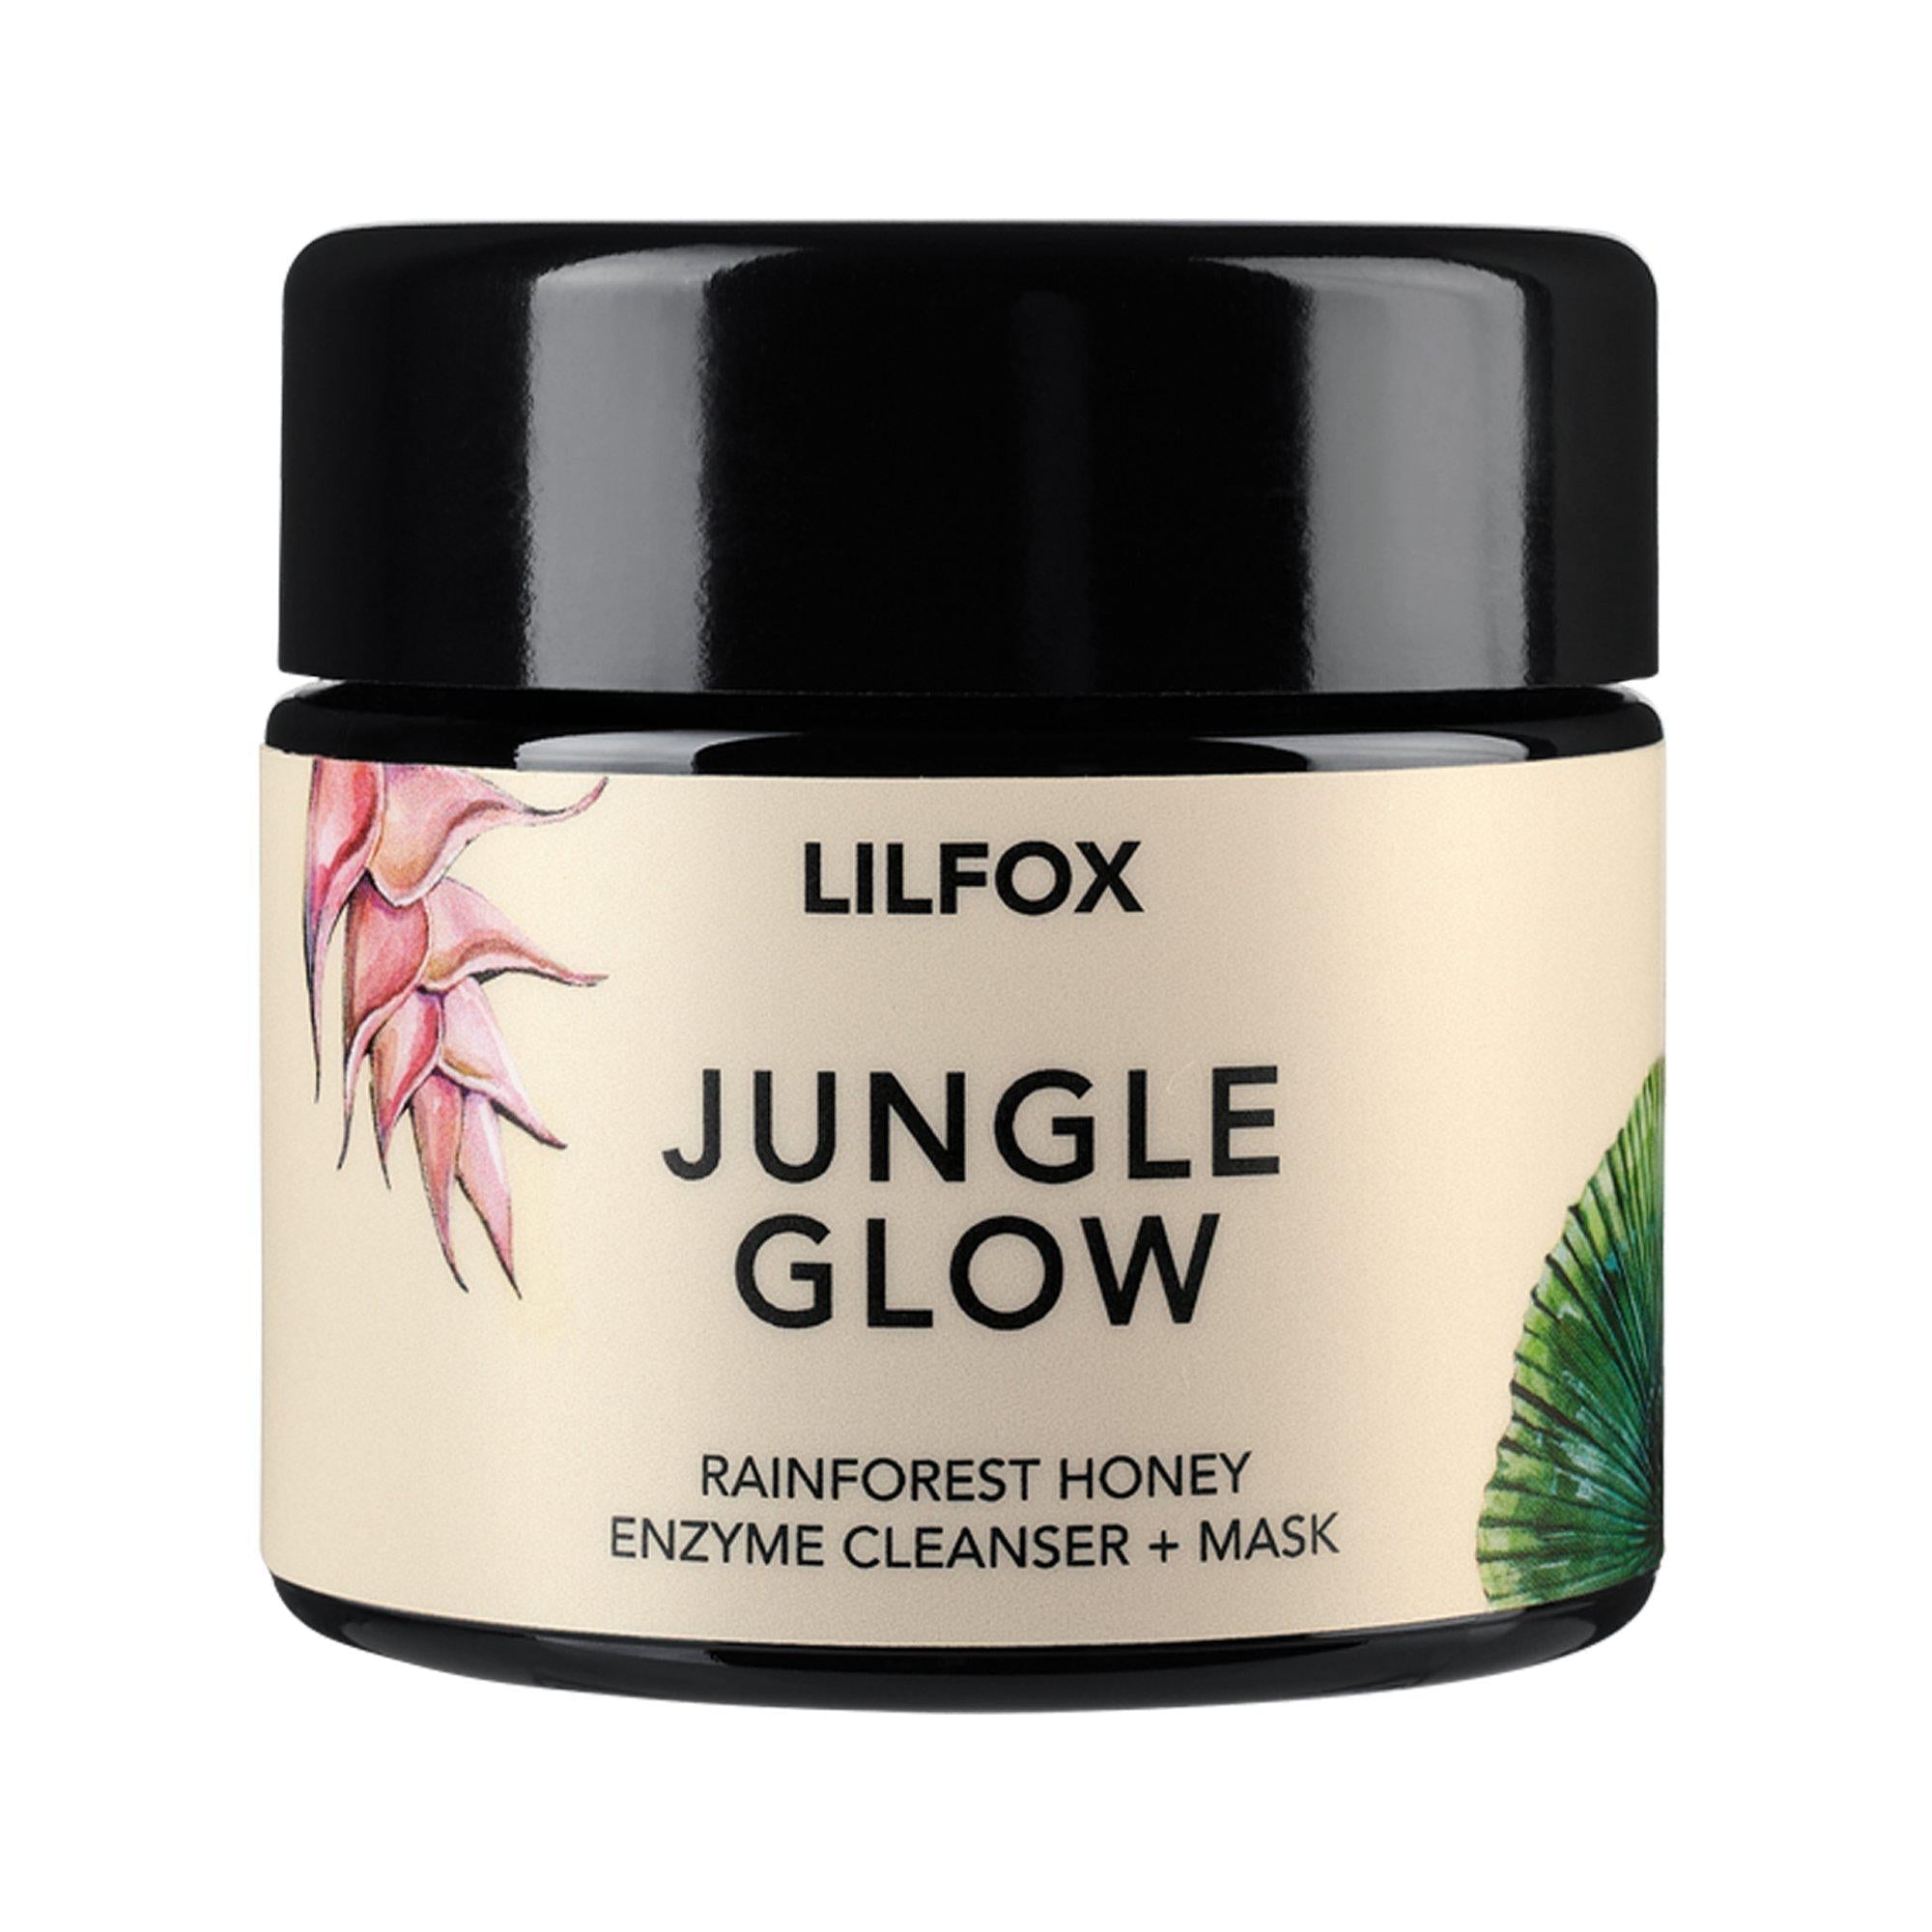 Indisponible - Jungle Glow Masque Enzymatique Indisponible - Jungle Glow Masque Enzymatique - Lilfox